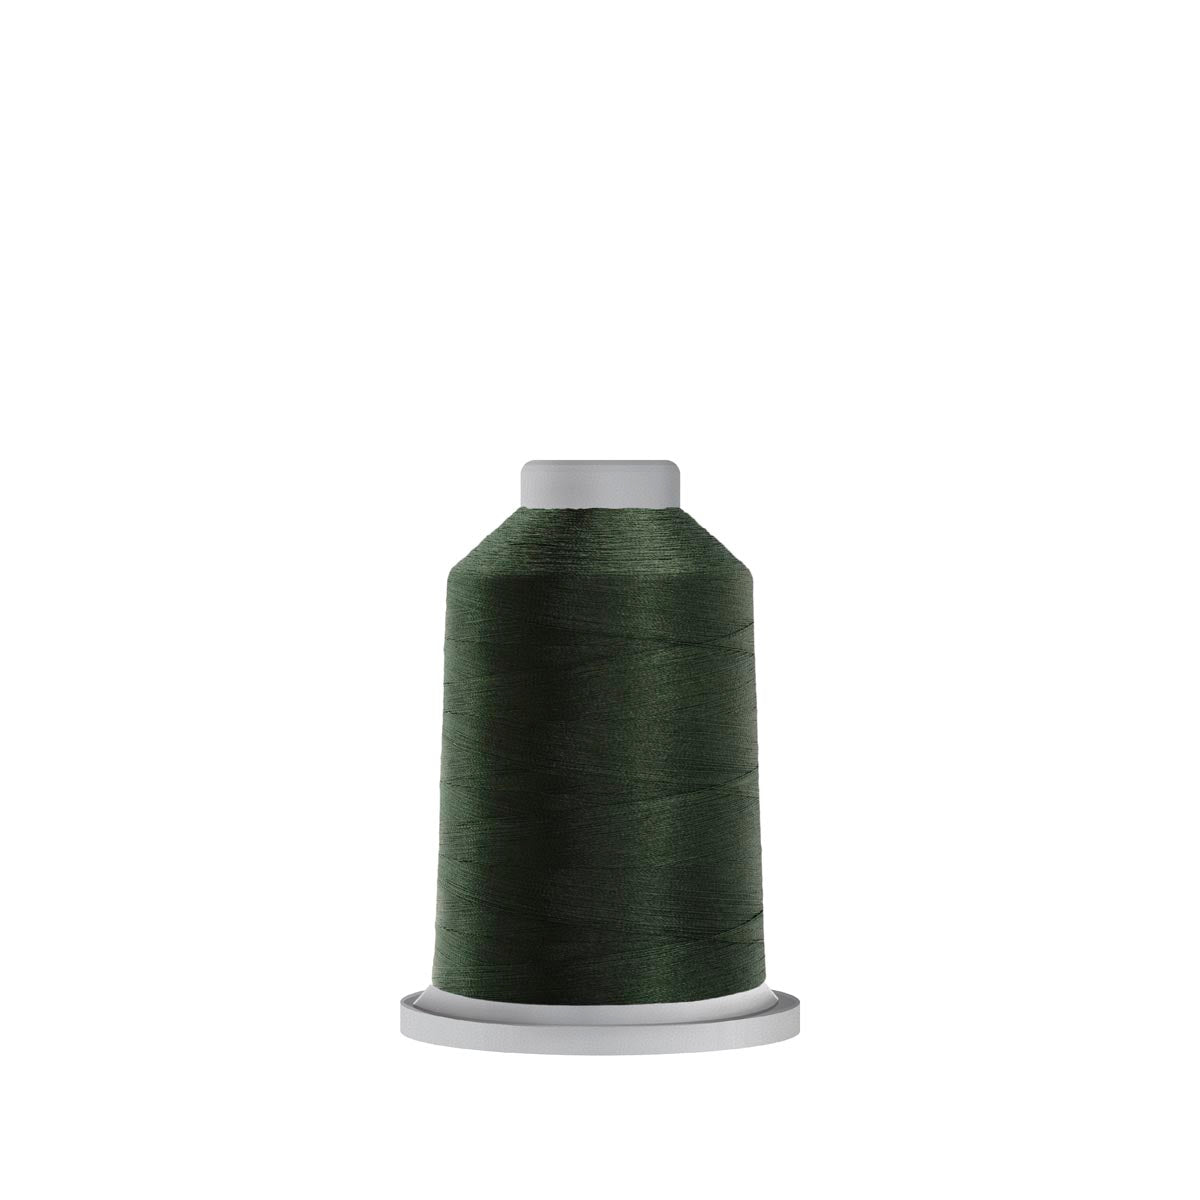 60350 Totem Green Glide Polyester Thread - 1,100 yards Mini Spool Fil-Tec